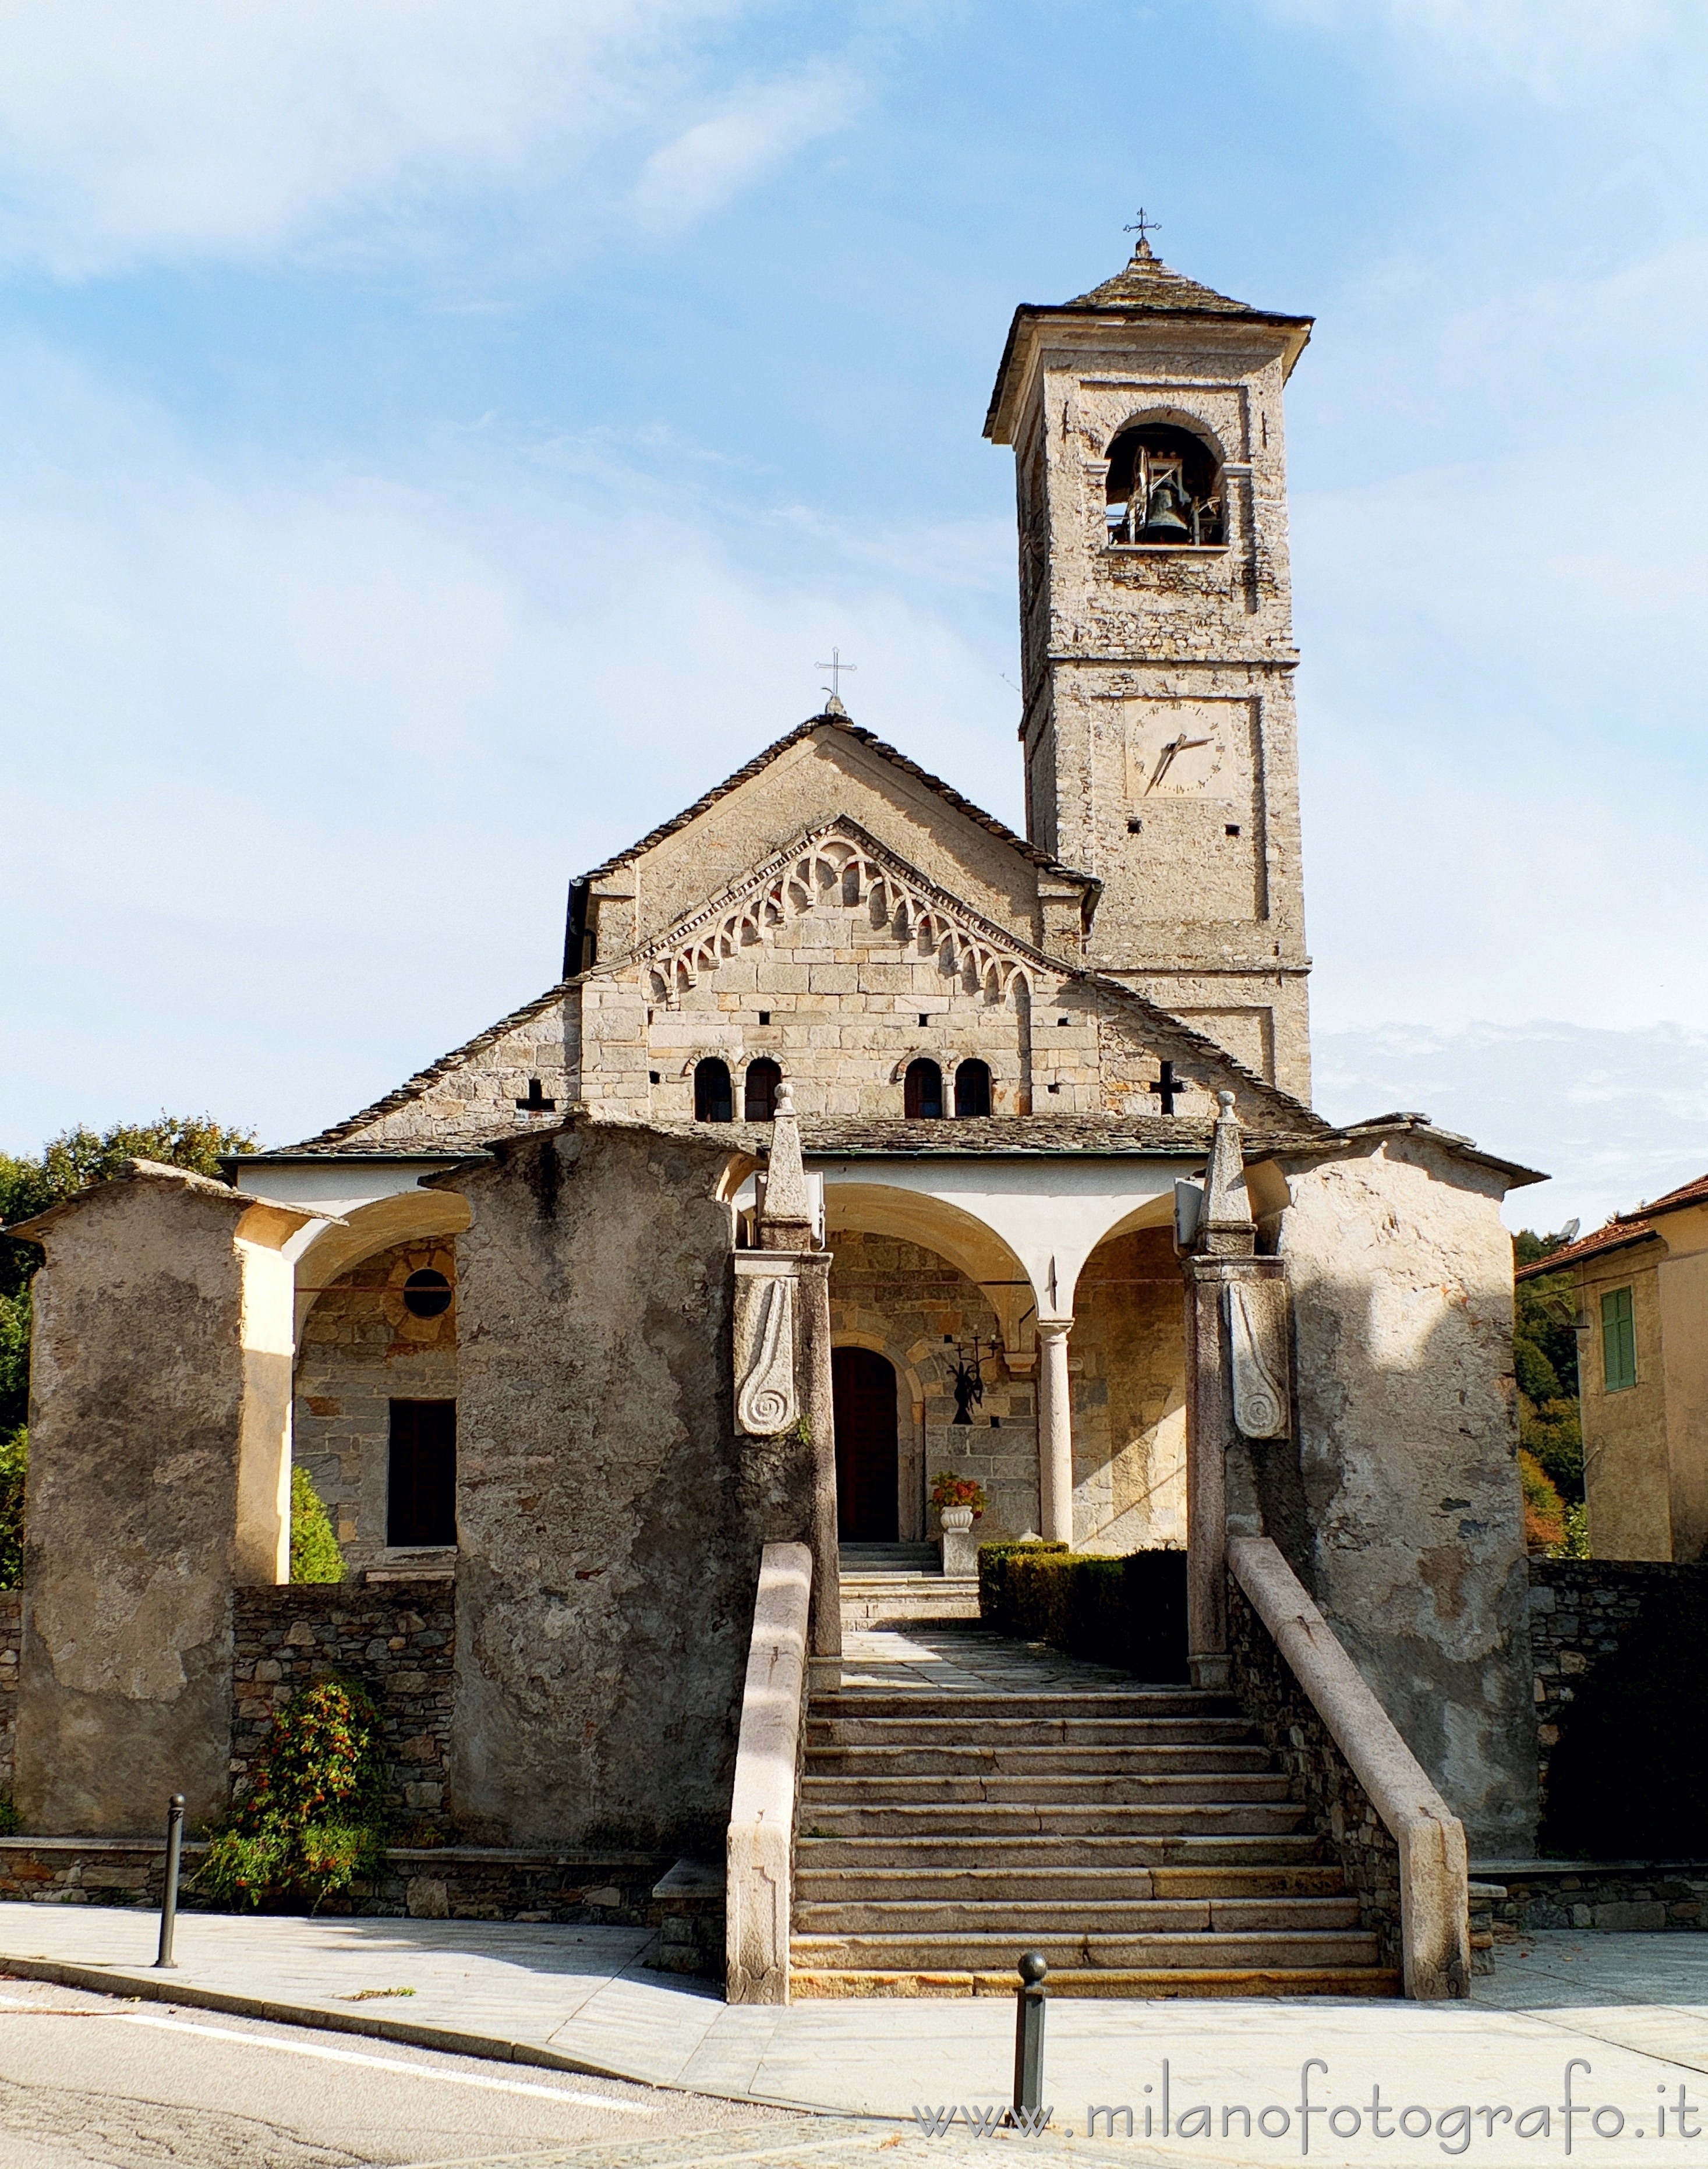 Brovello-Carpugnino (Verbano-Cusio-Ossola, Italy): Church of San Donato - Brovello-Carpugnino (Verbano-Cusio-Ossola, Italy)